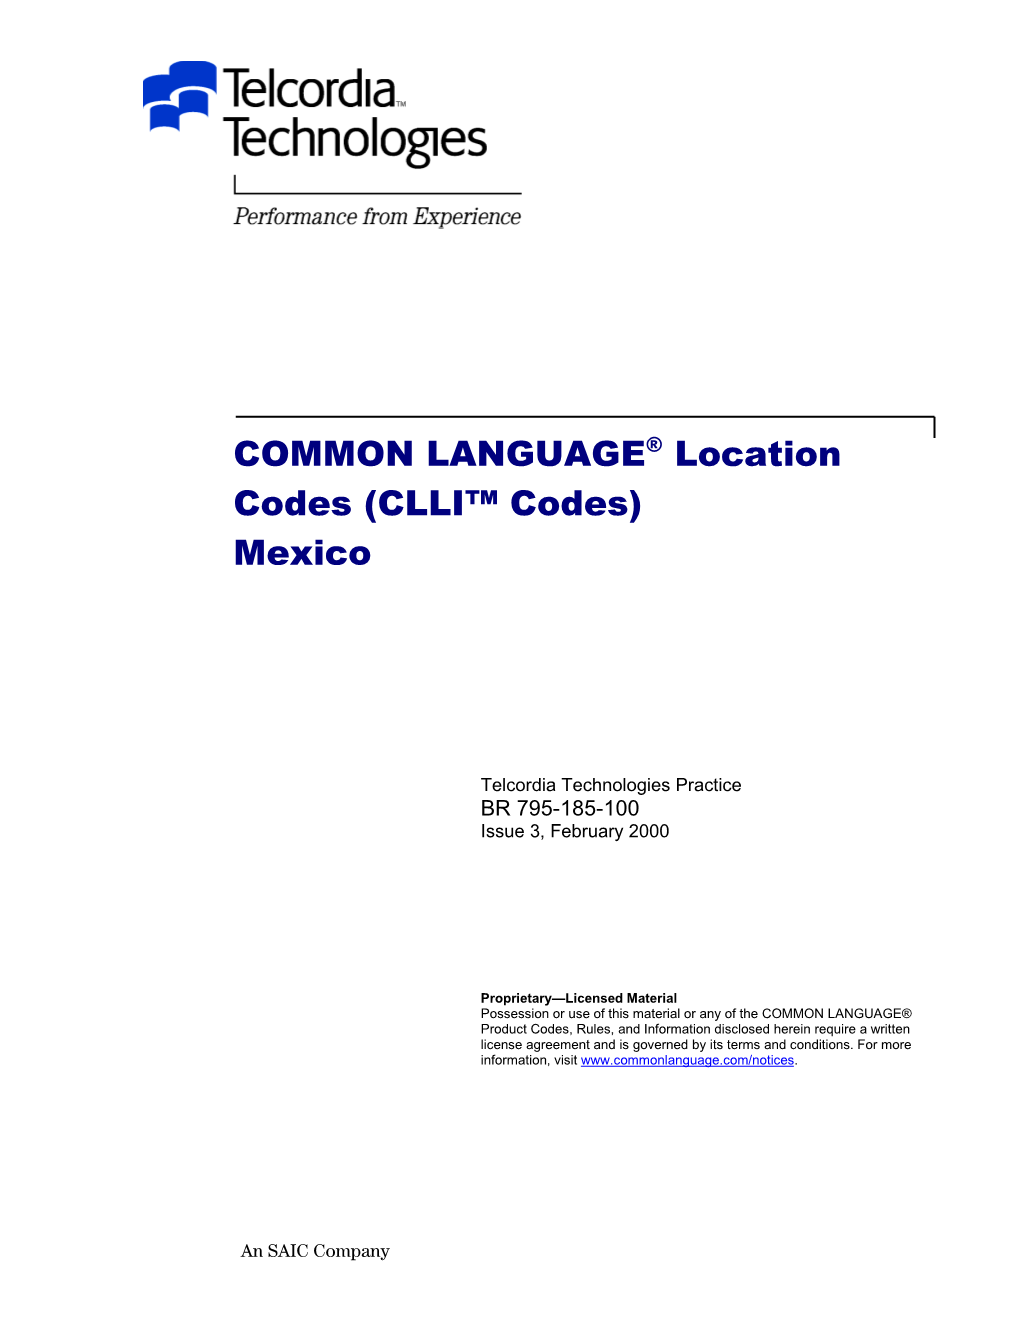 Clli(Tm) Codes